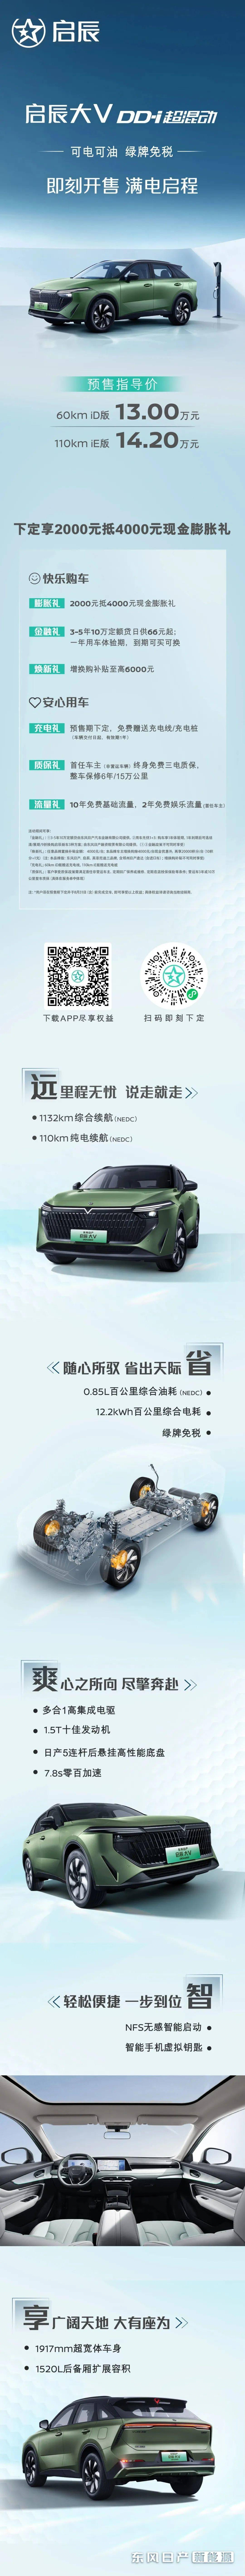 东风日产首款插混新能源车型启辰大V DD-i开启预售 预计将于7月正式开启交付